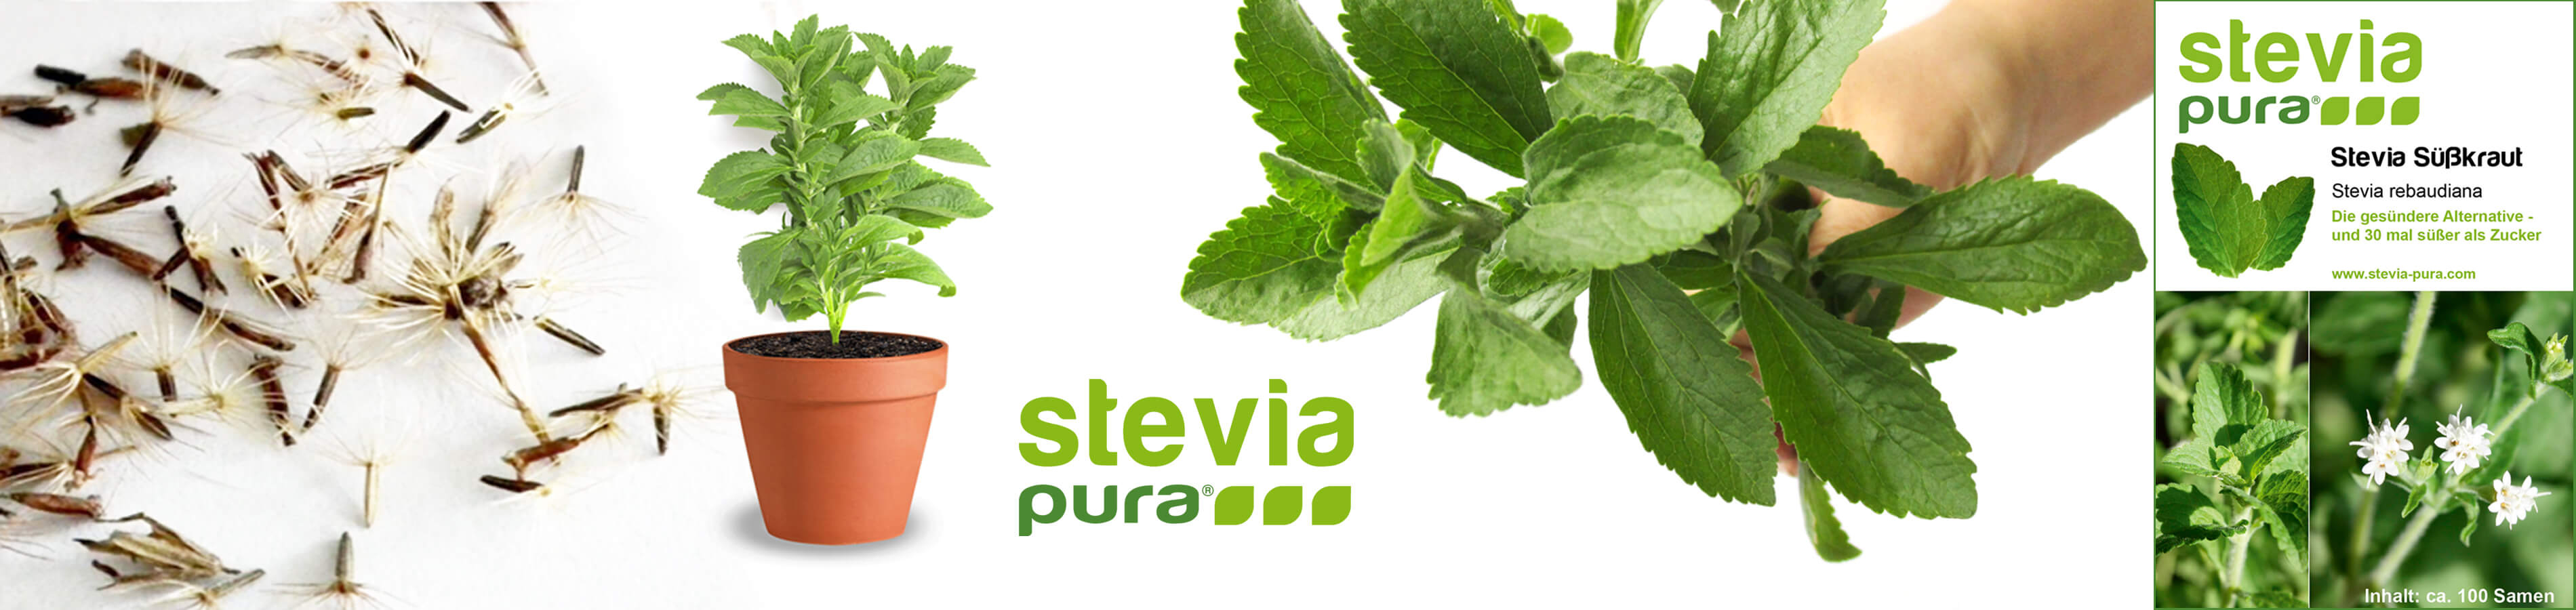 Sementes de Stevia Sementes de eStevia rebaudiana Erva...